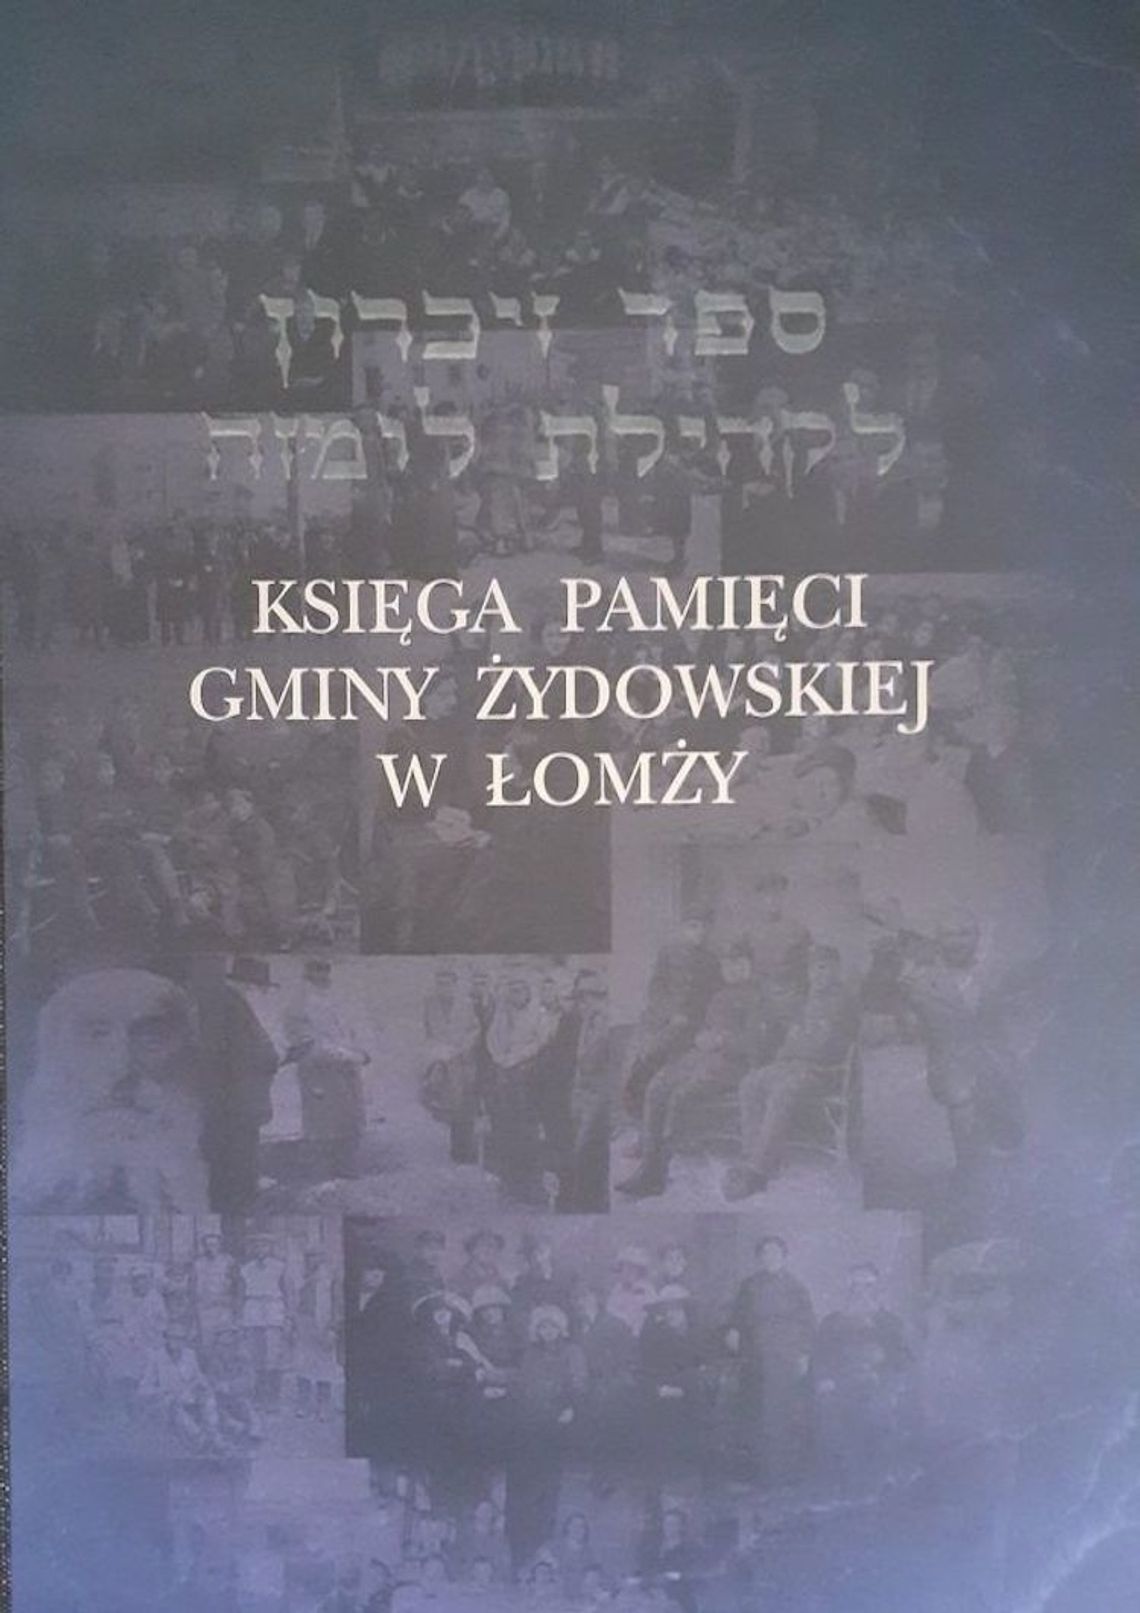 Historia Łomży i jej mieszkańców żydowskiego pochodzenia